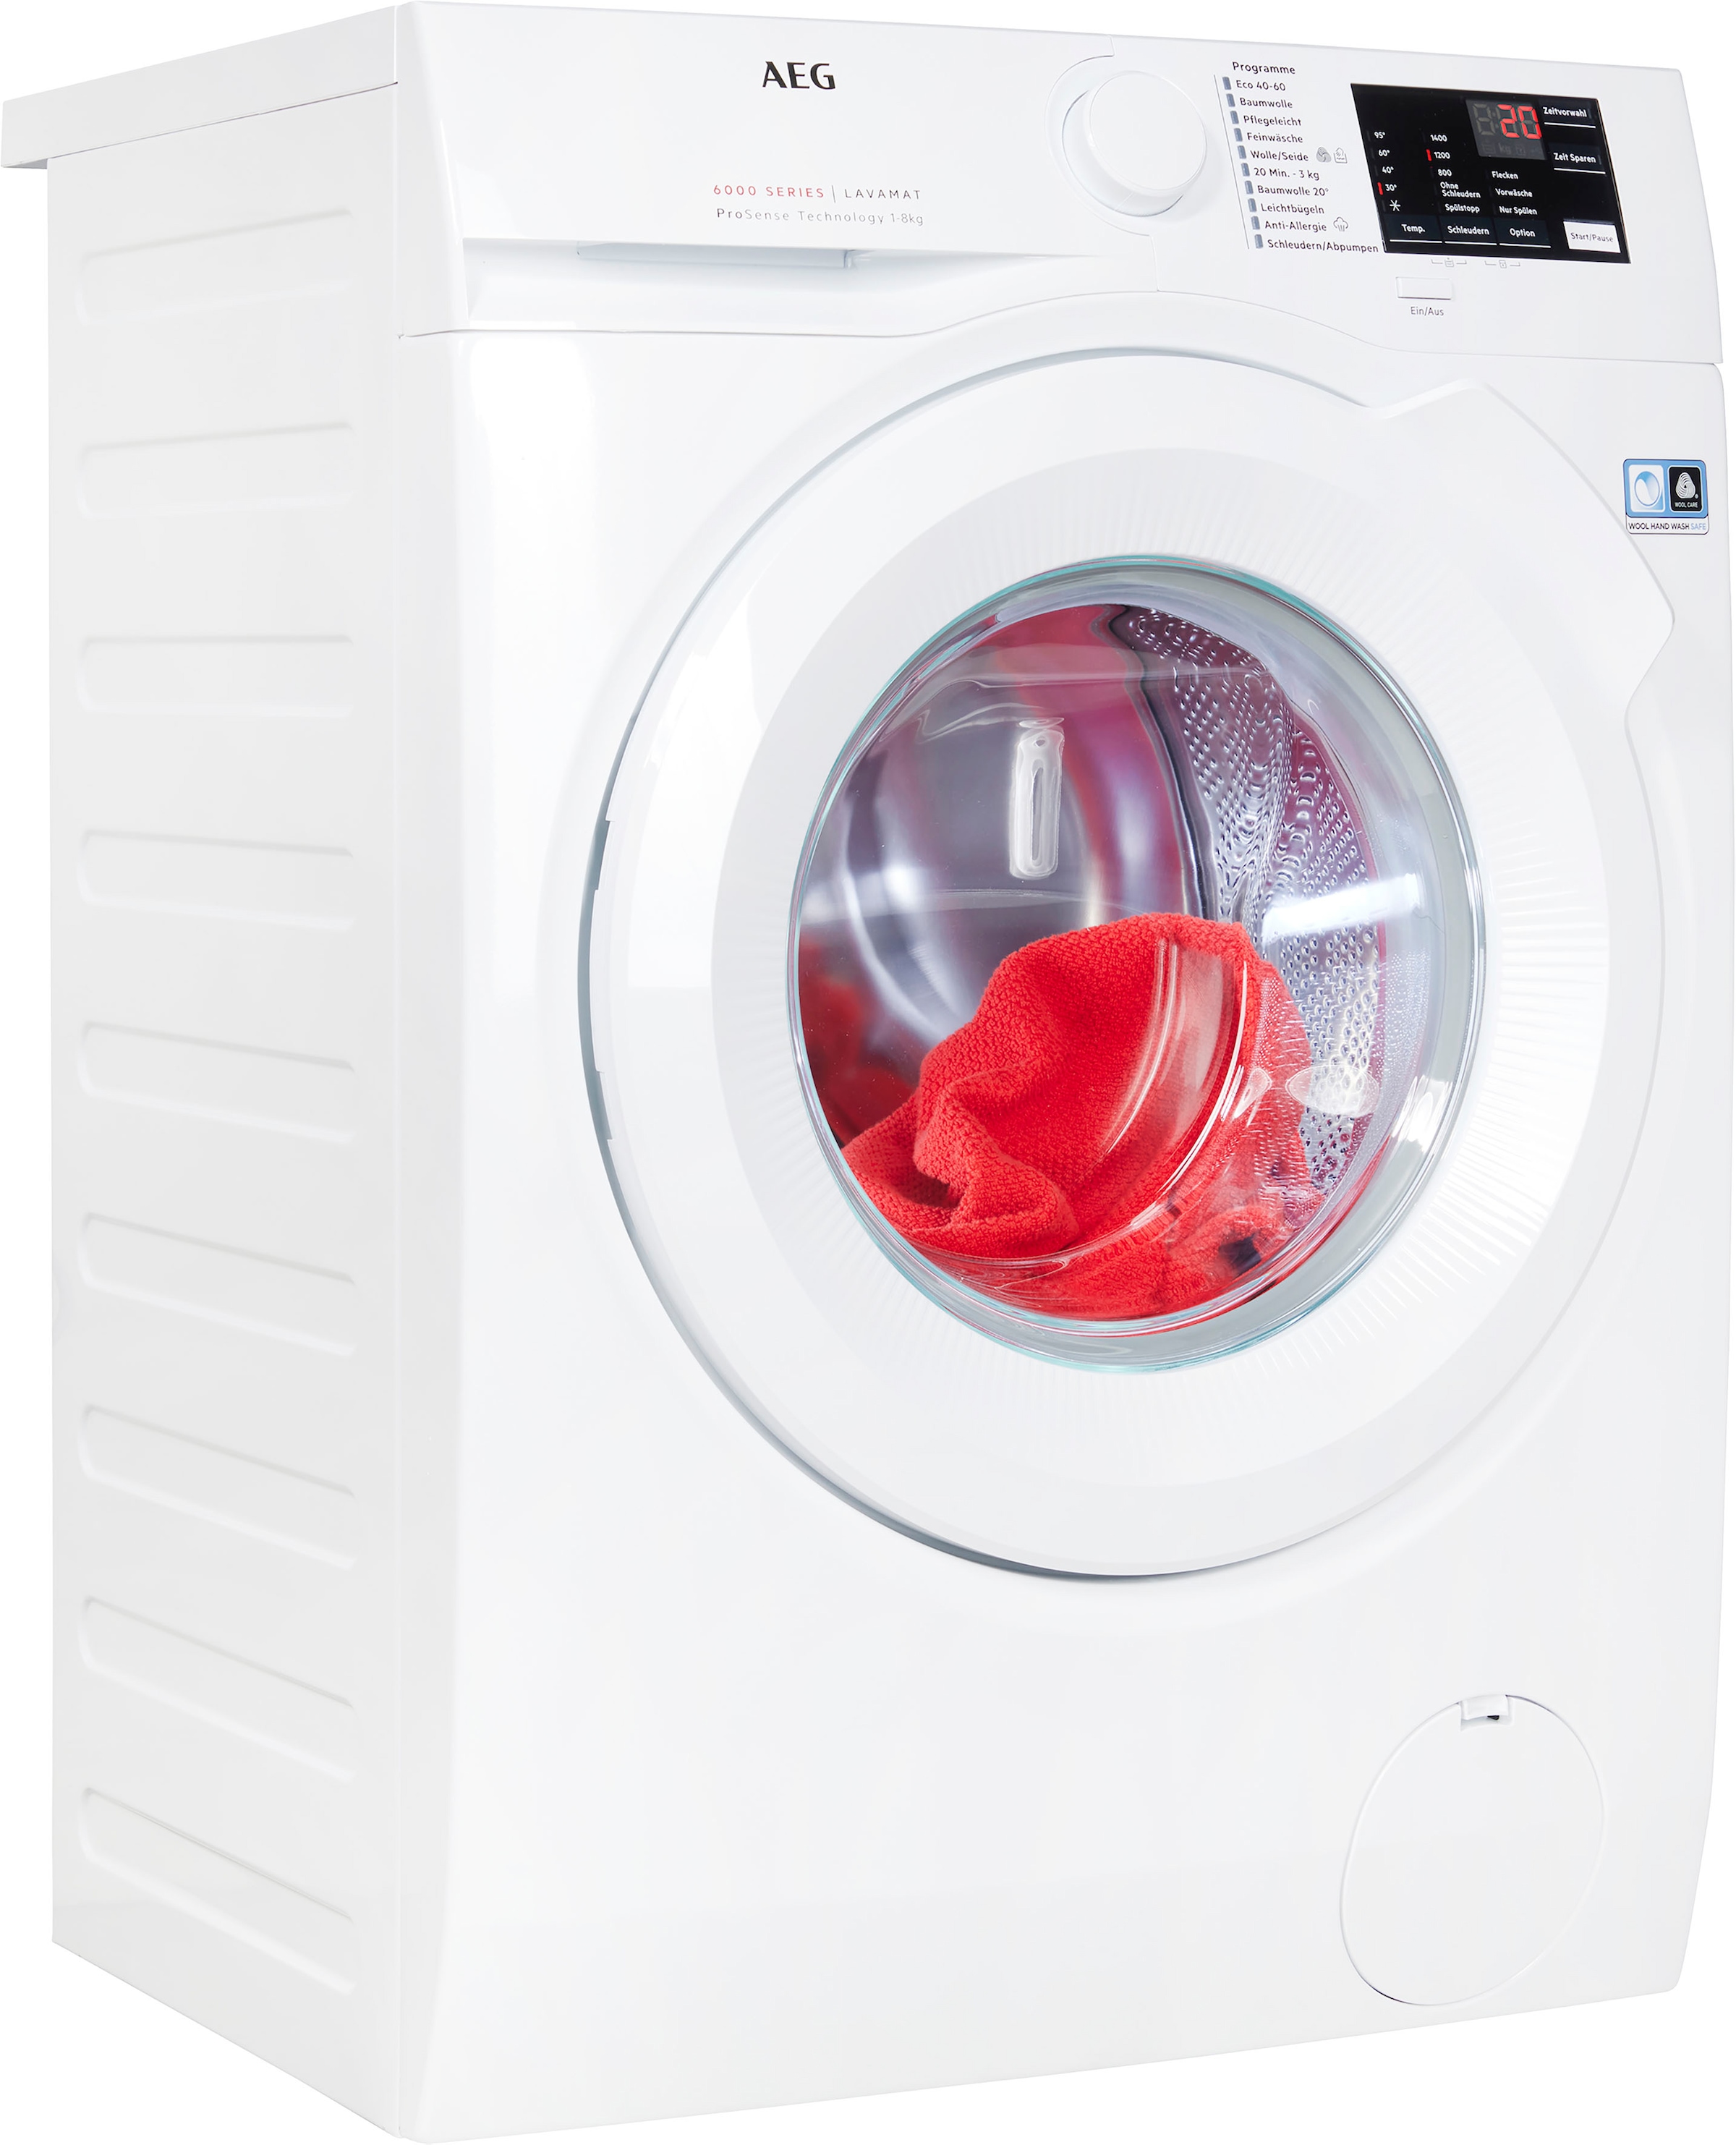 AEG Waschmaschine, Serie 6000, mit kg, Dampf Anti-Allergie bestellen Hygiene-/ L6FB480FL, Programm U/min, 1400 8